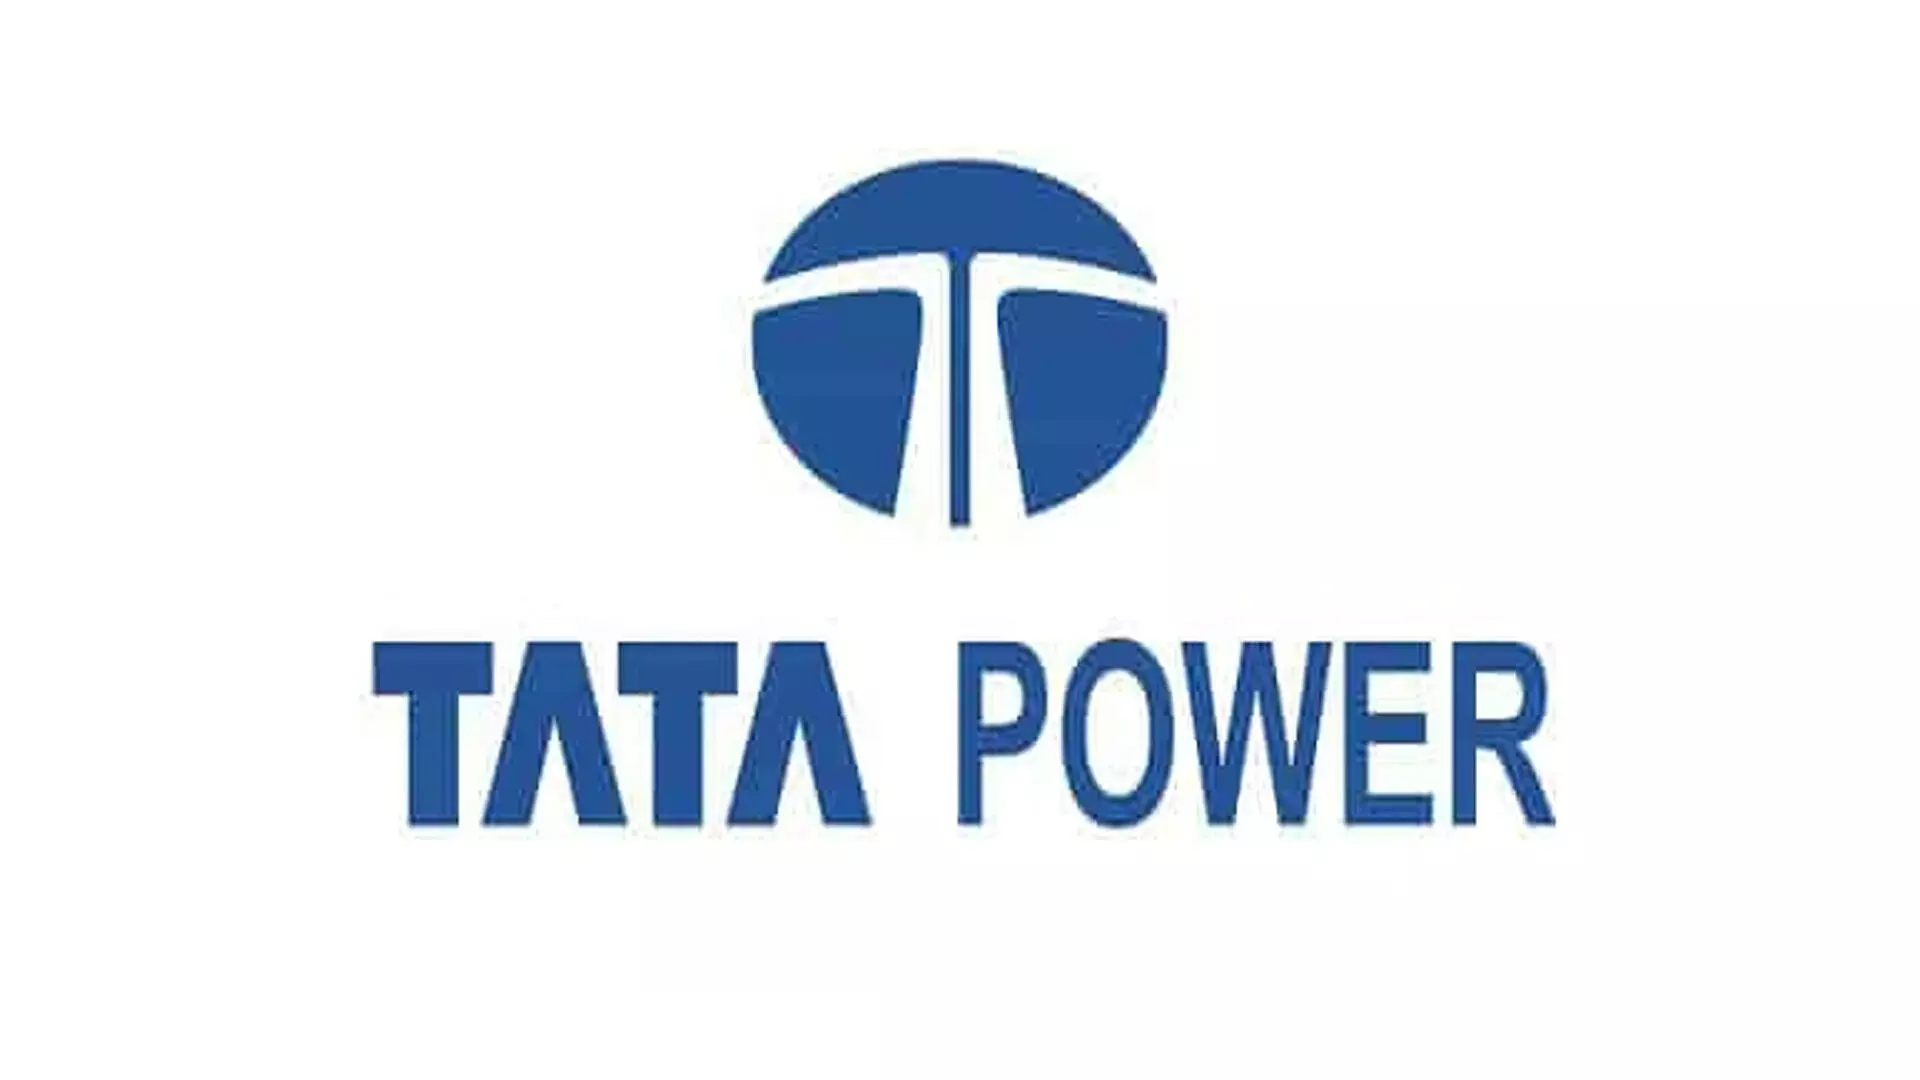 टाटा पावर सोलर सिस्टम्स ने 120 मेगावाट बैटरी स्टोरेज के साथ 100 सोलर प्रोजेक्ट शुरू किए